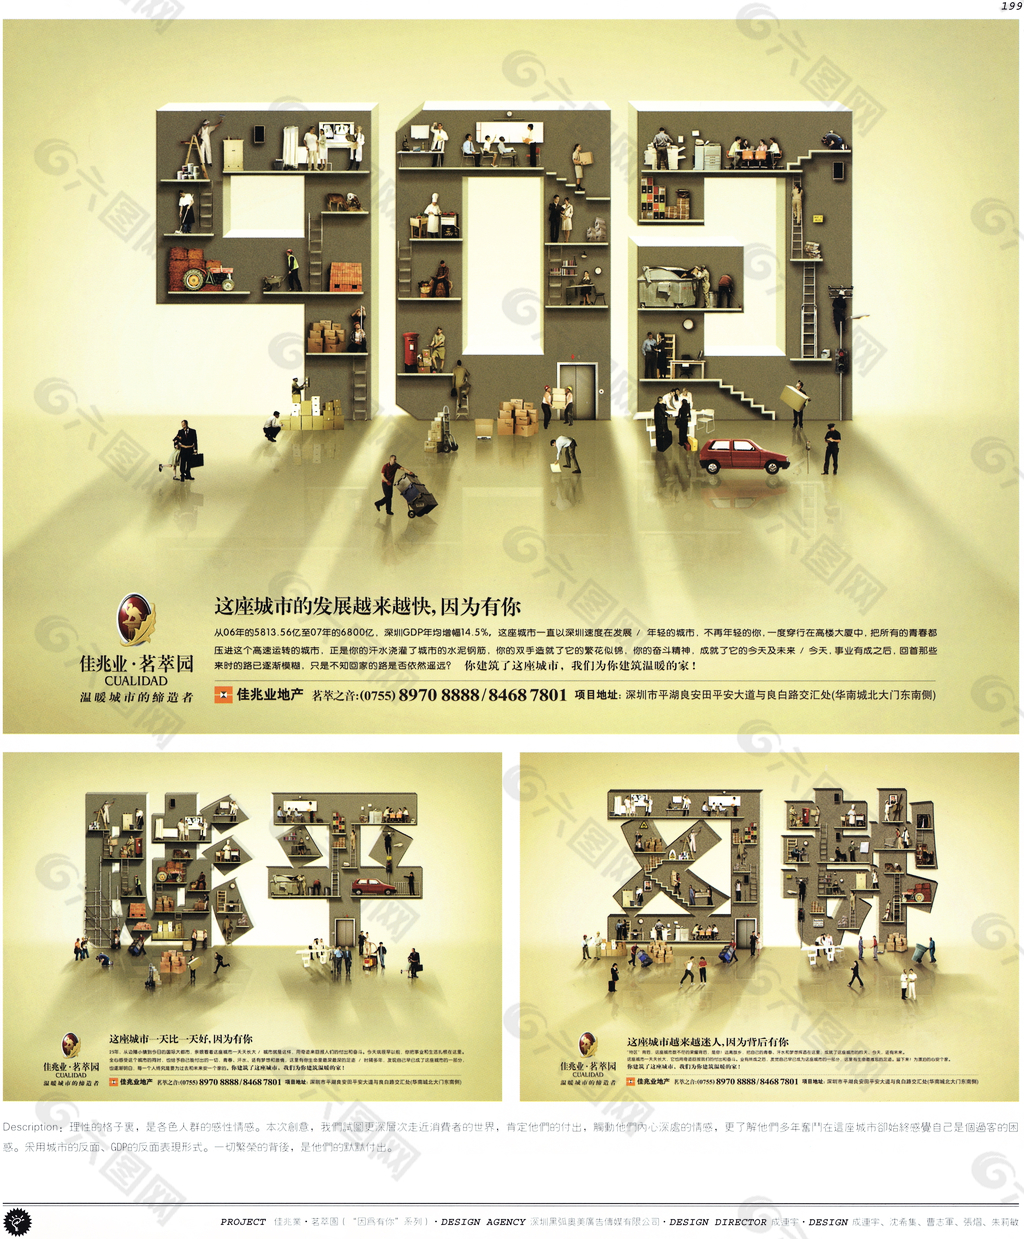 中国房地产广告年鉴 第一册 创意设计_0190